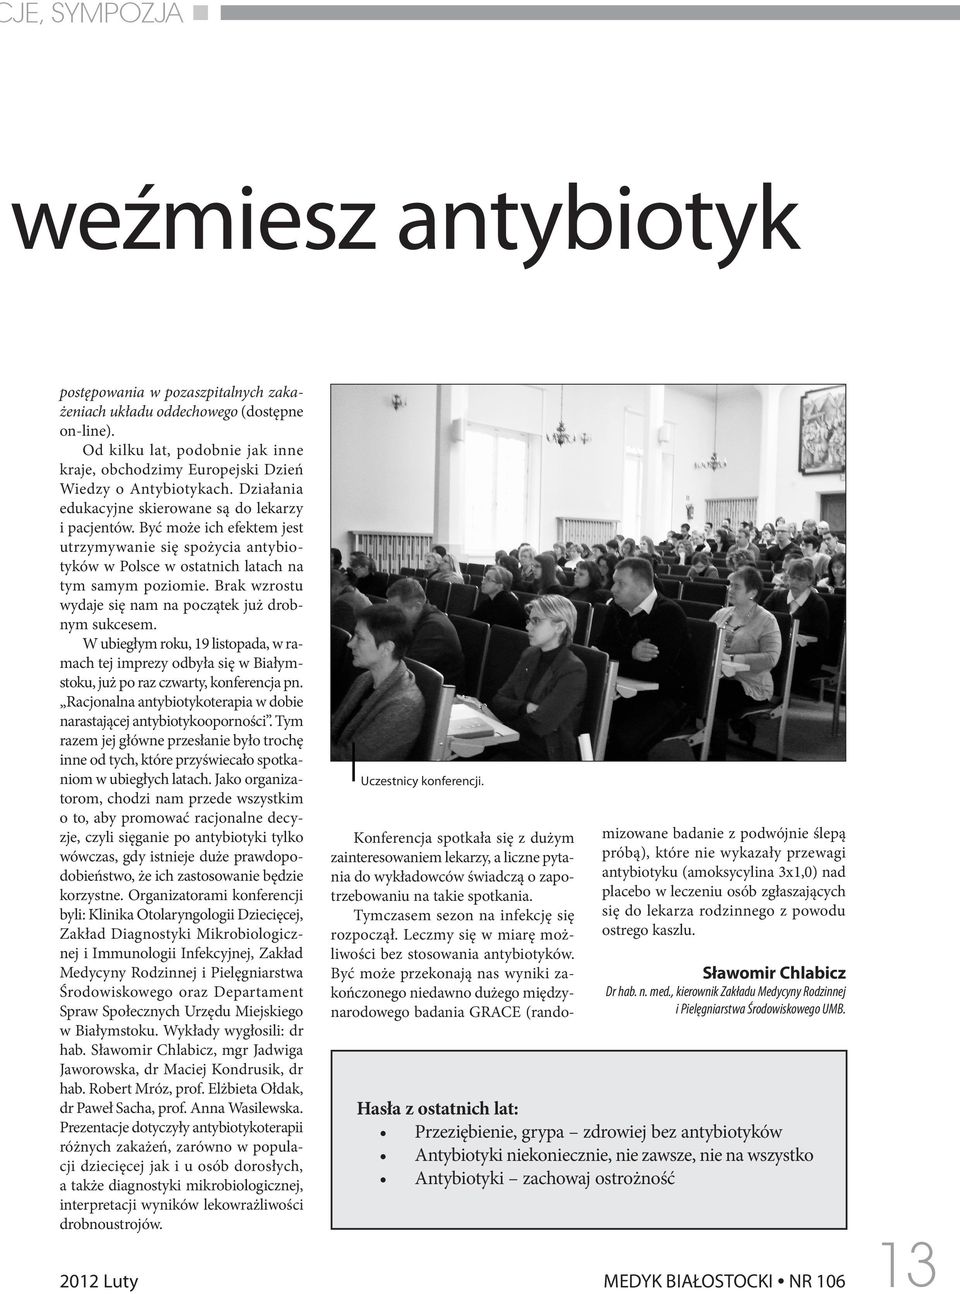 Być może ich efektem jest utrzymywanie się spożycia antybiotyków w Polsce w ostatnich latach na tym samym poziomie. Brak wzrostu wydaje się nam na początek już drobnym sukcesem.